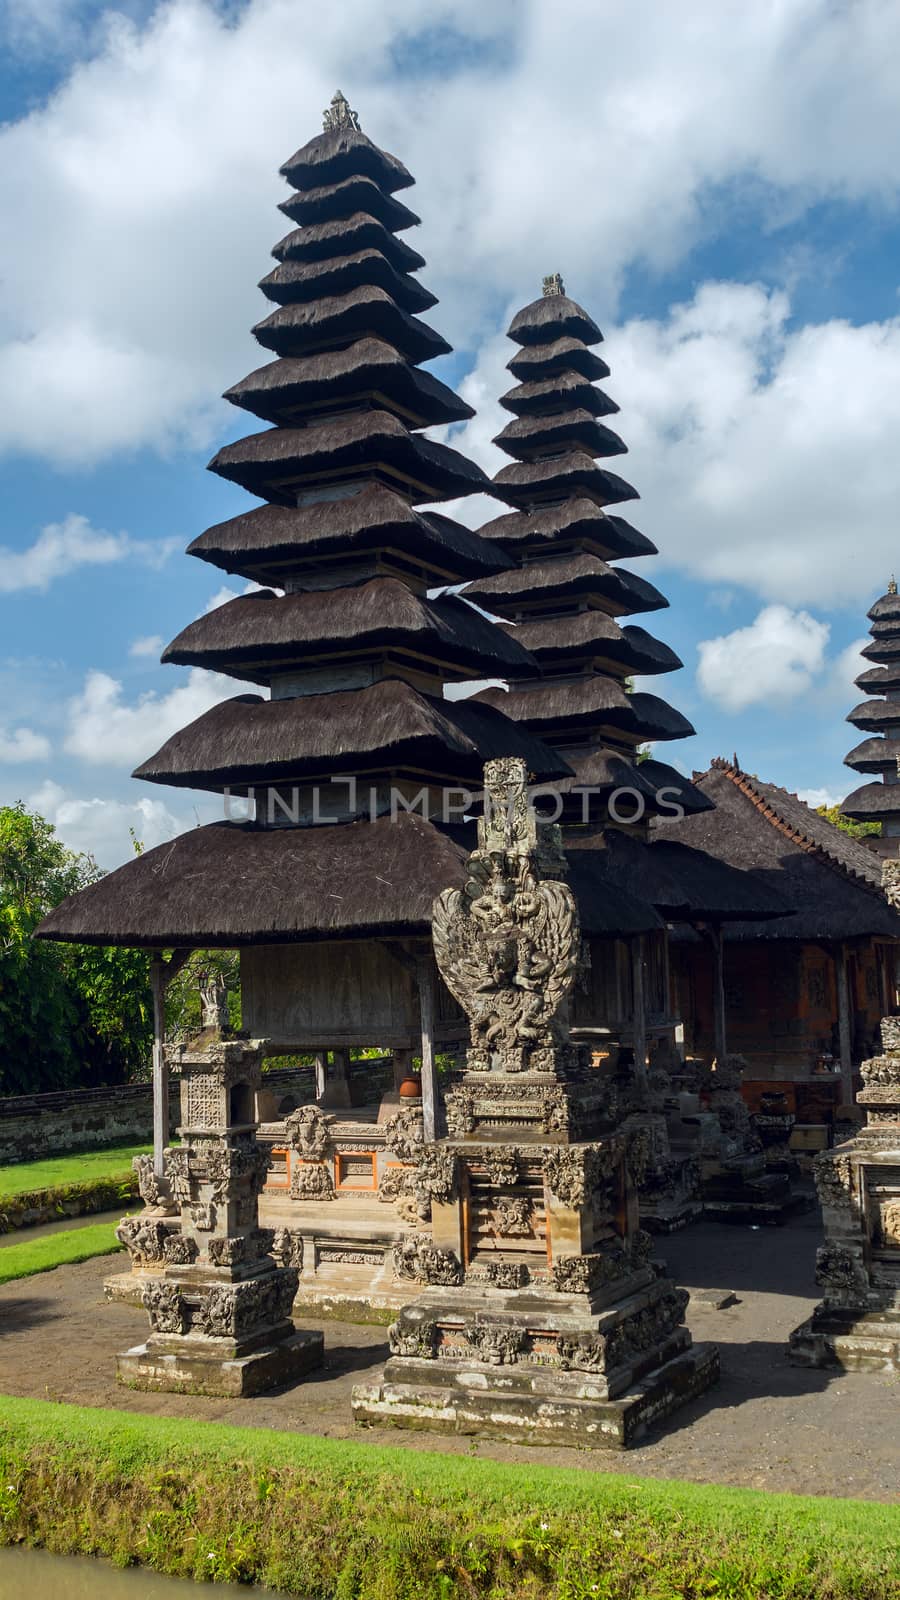 Temple complex in Bali